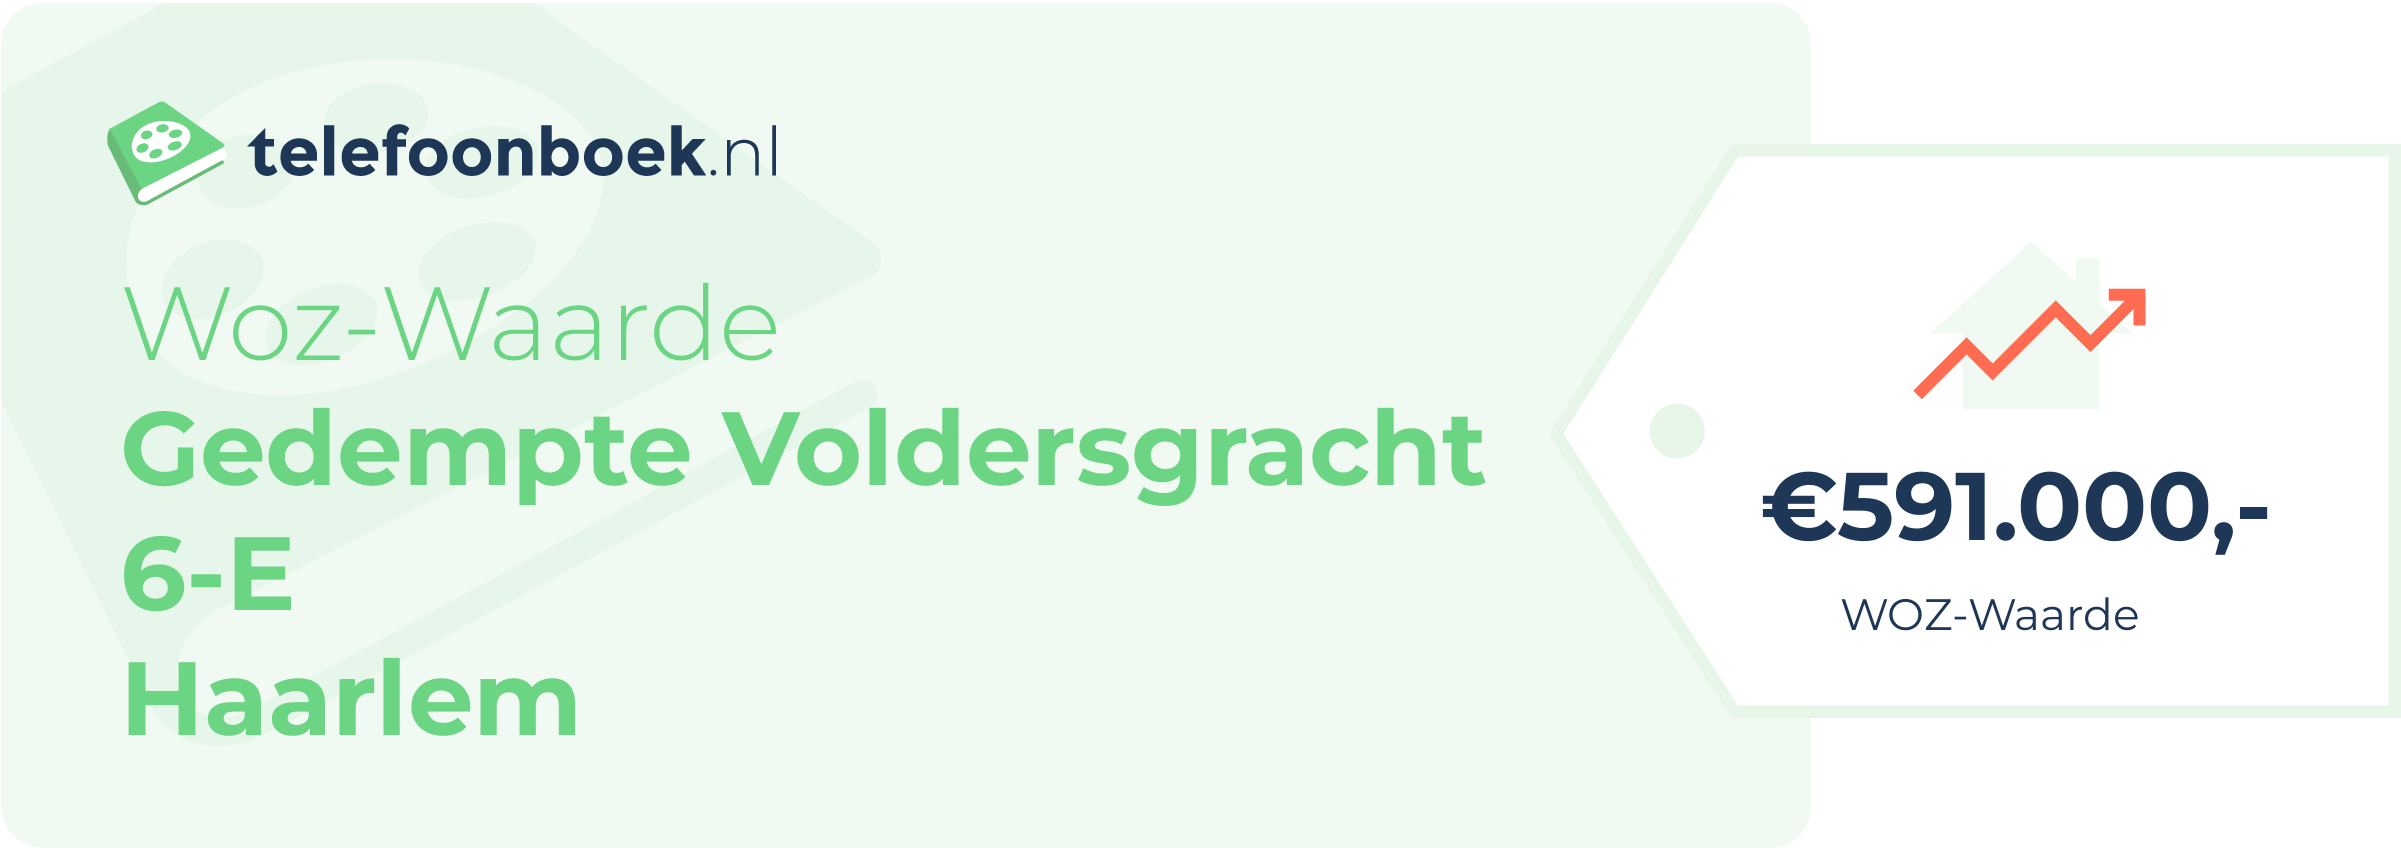 WOZ-waarde Gedempte Voldersgracht 6-E Haarlem